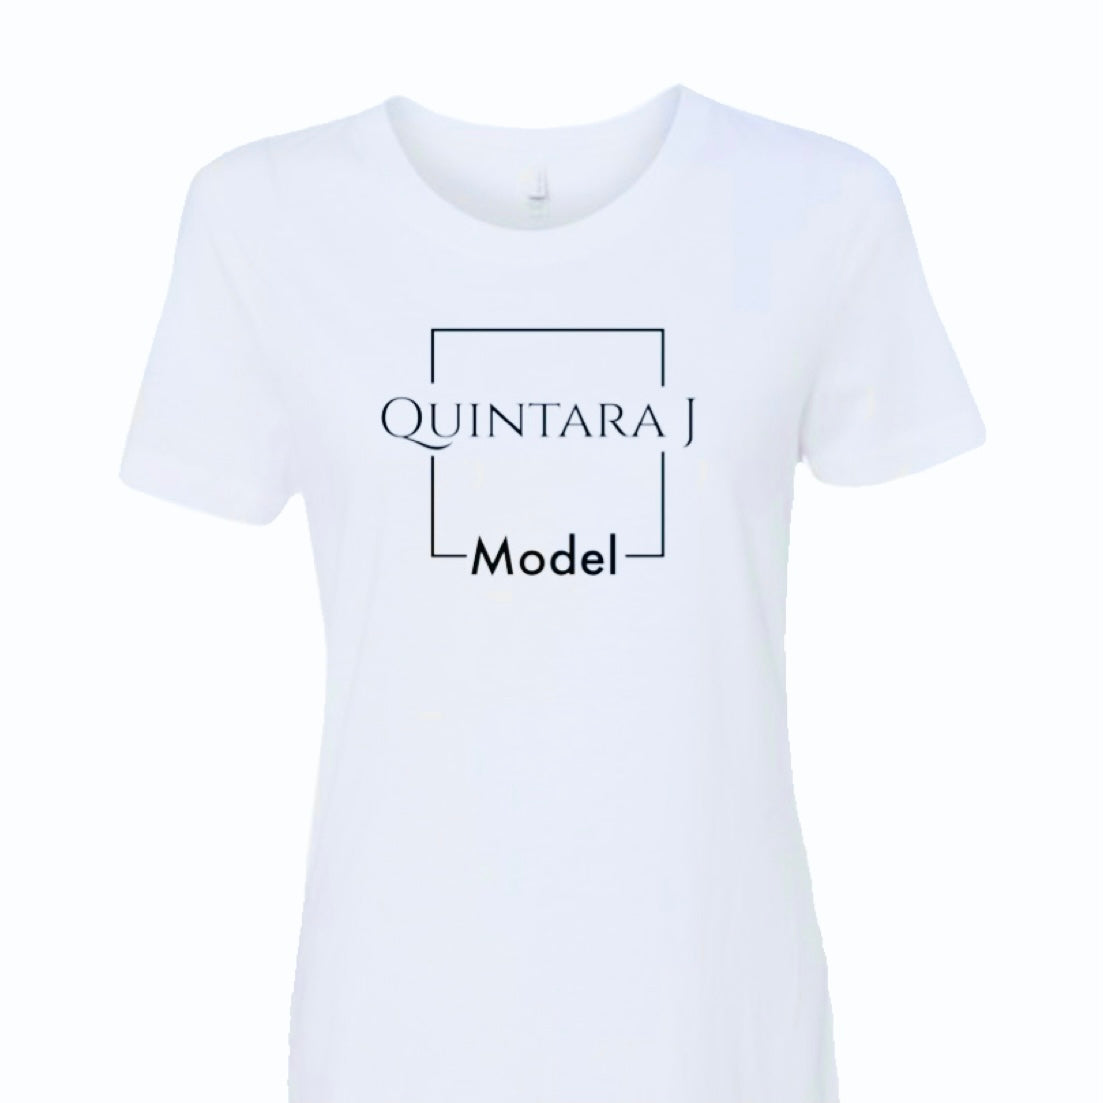 “Quintara J Model” Pre-Order